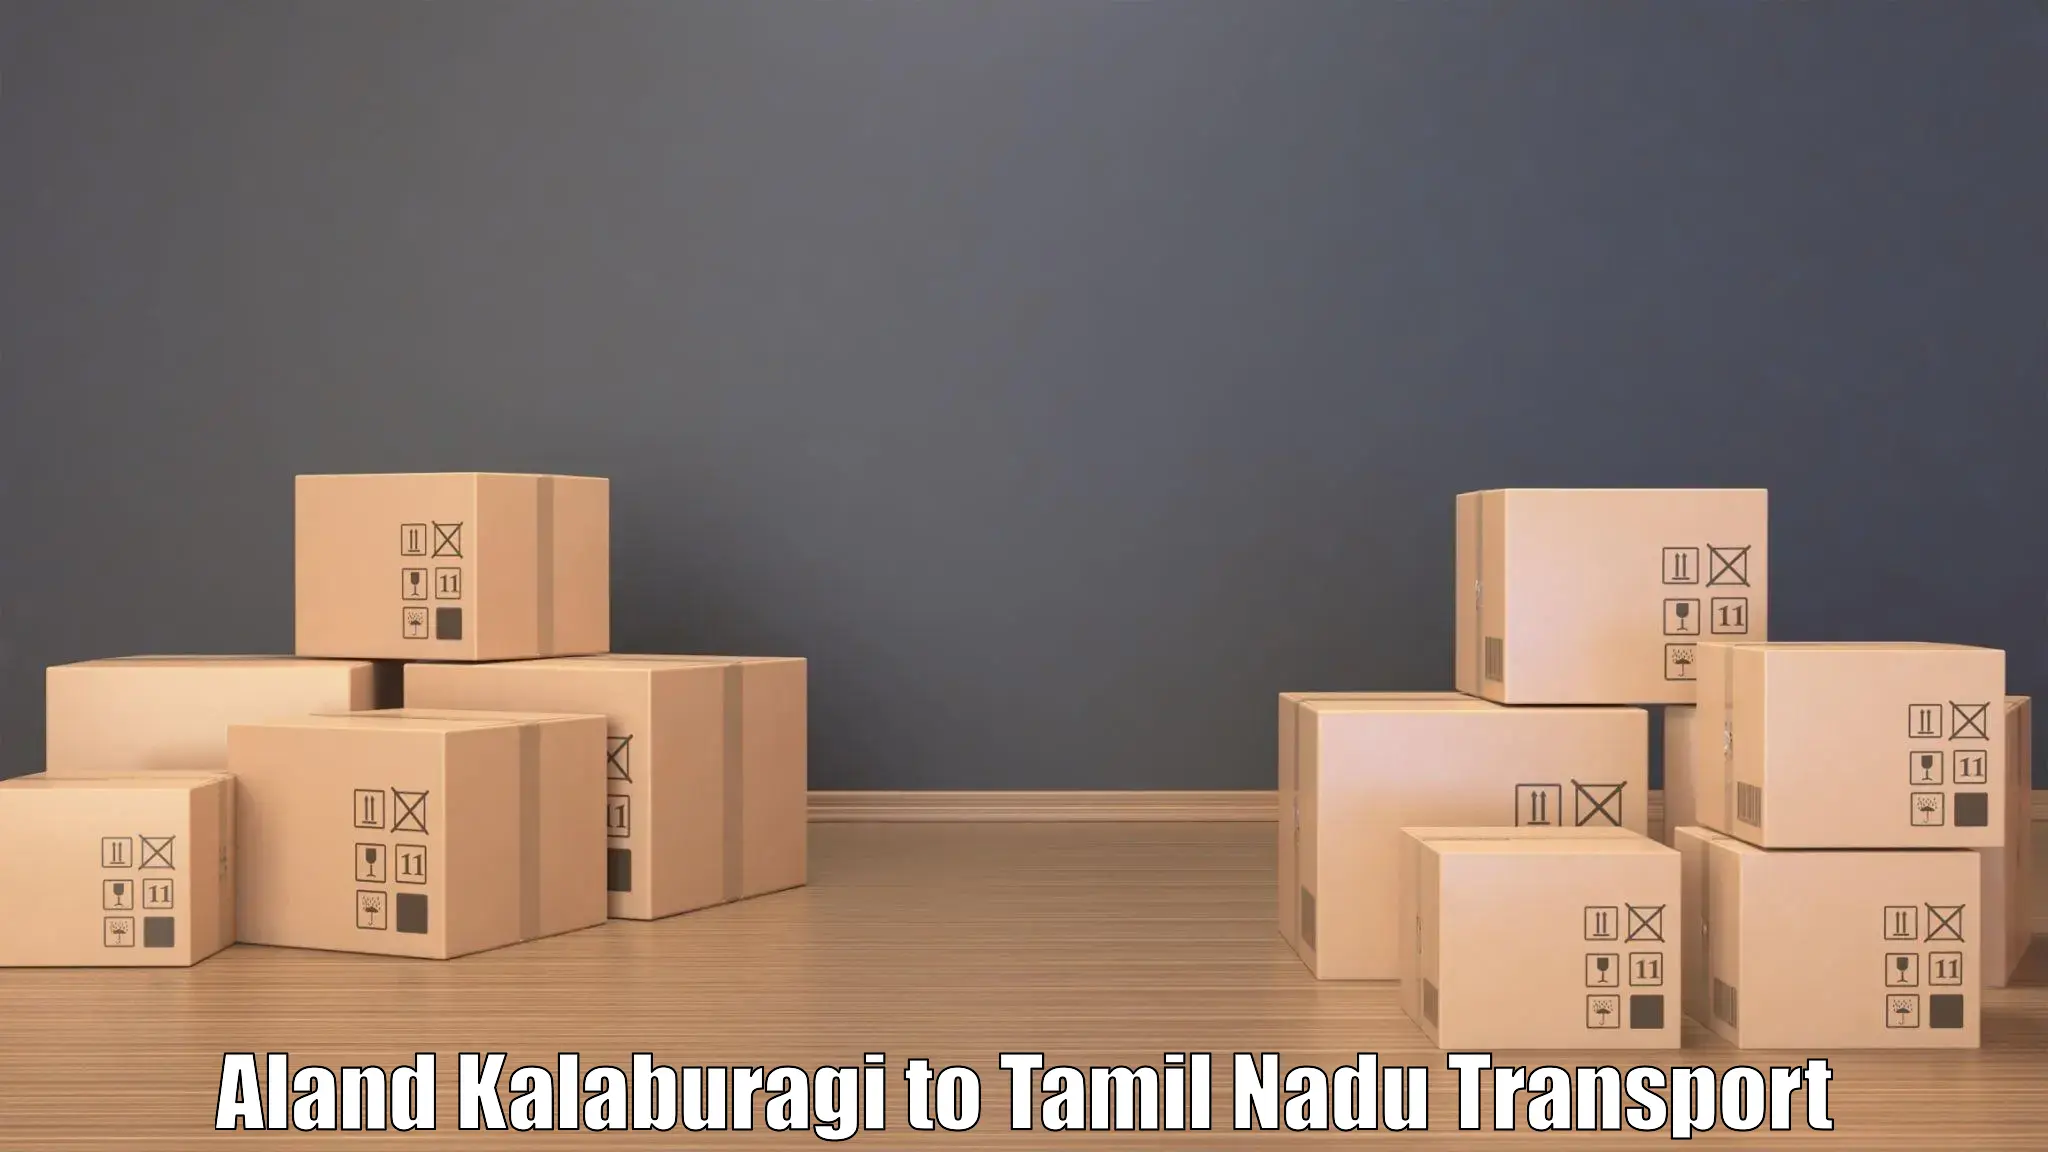 Furniture transport service Aland Kalaburagi to Paramakudi